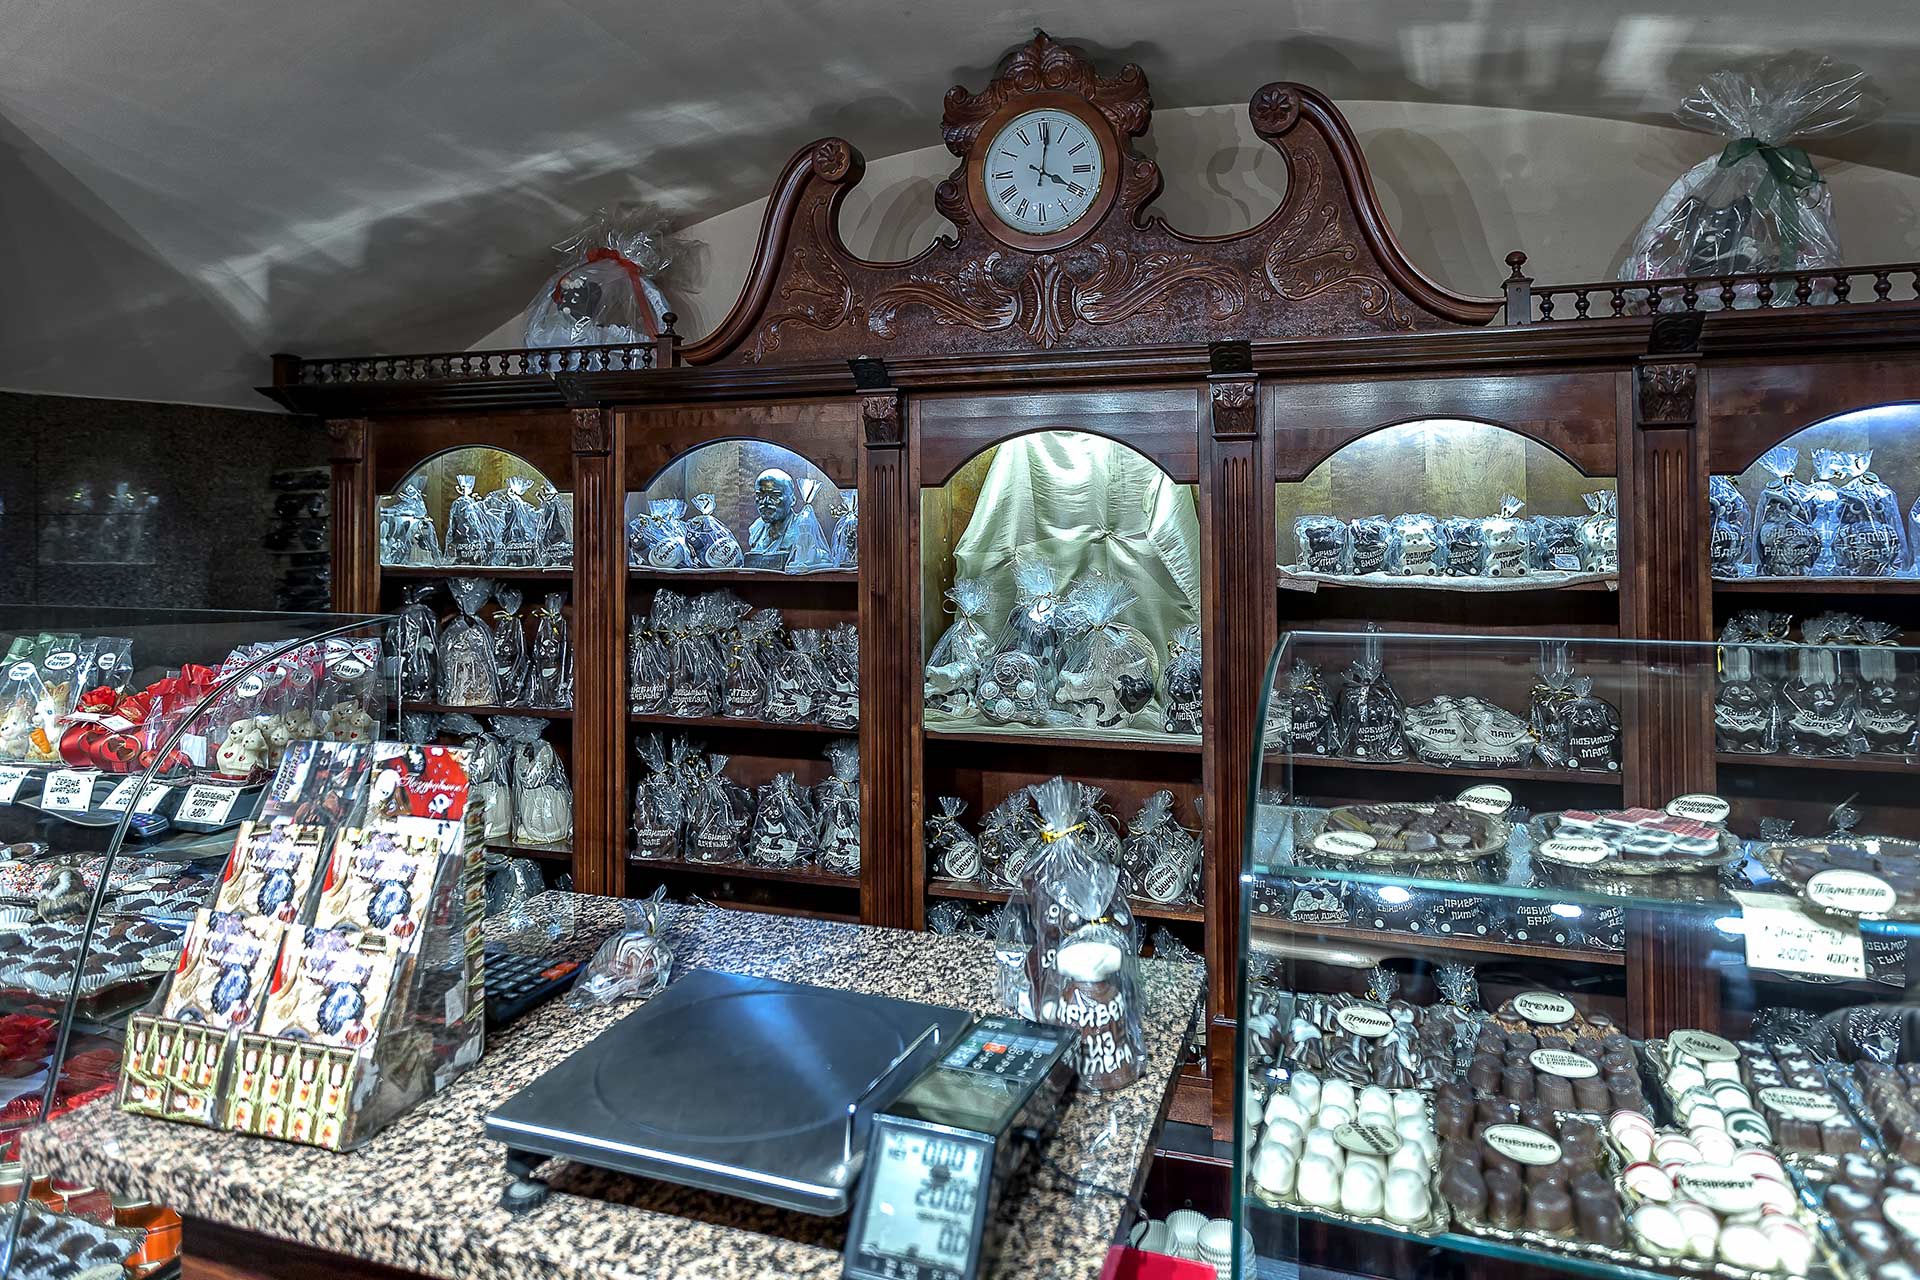 Музей шоколада в петербурге